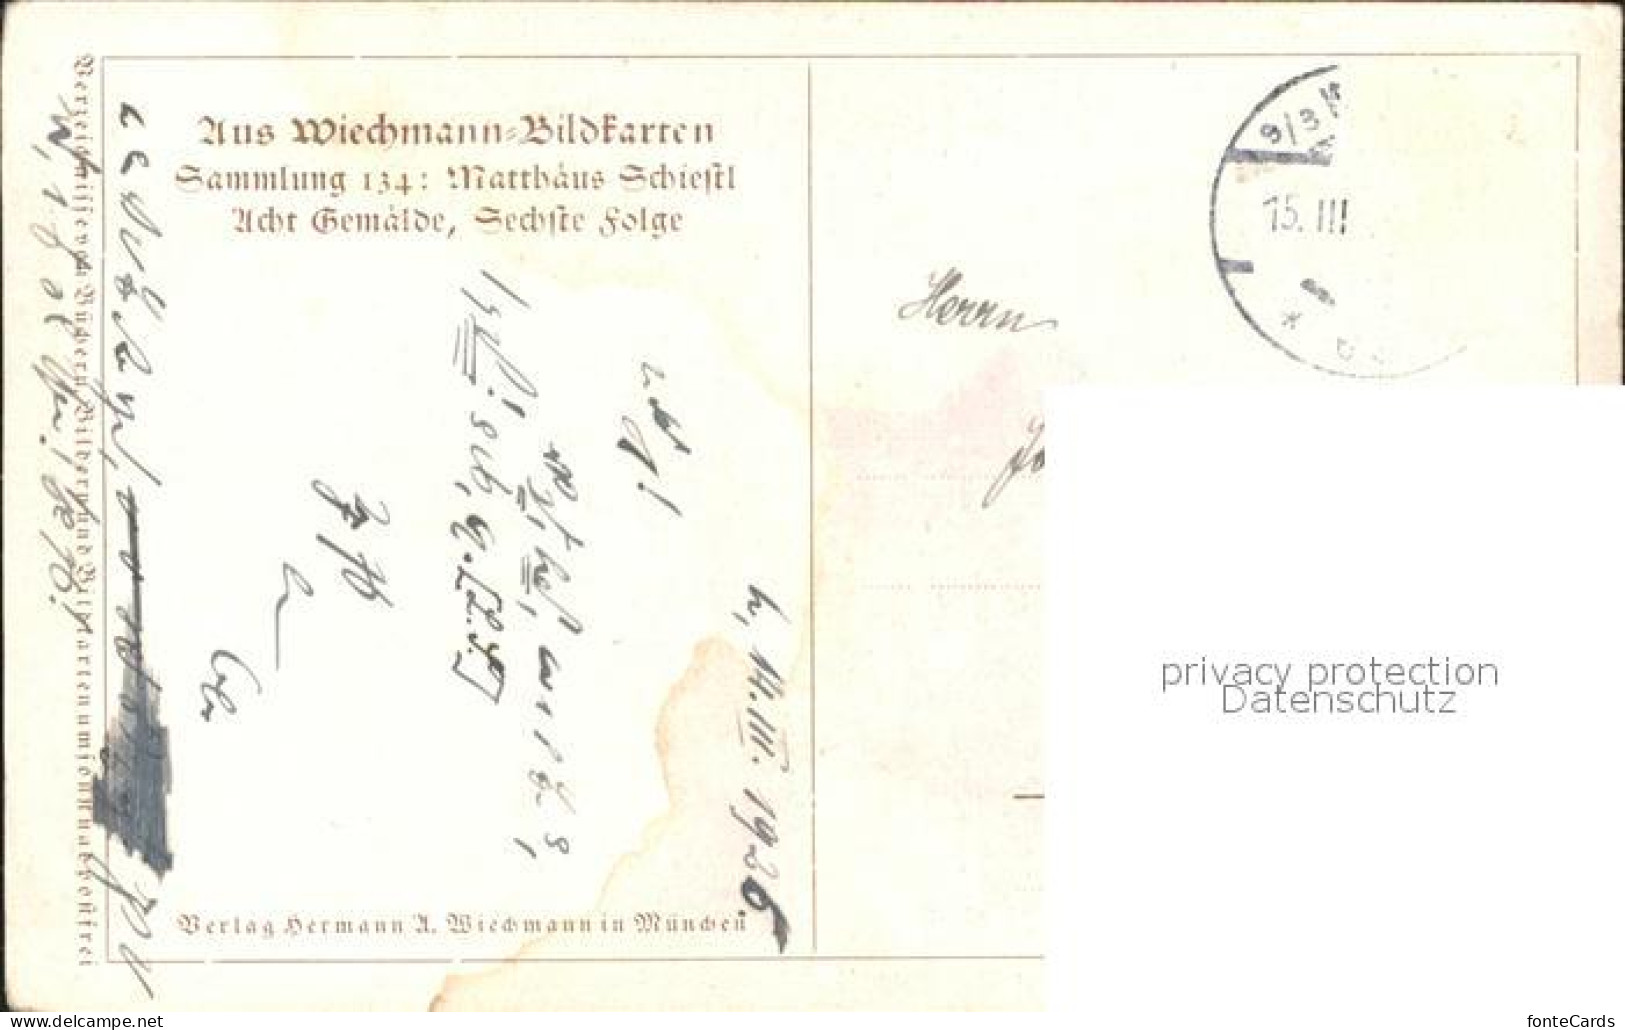 71910583 Schiestl M. Abendfriede Wiechmann-Bildkarte Sammlung 134   - Schiestl, Matthaeus